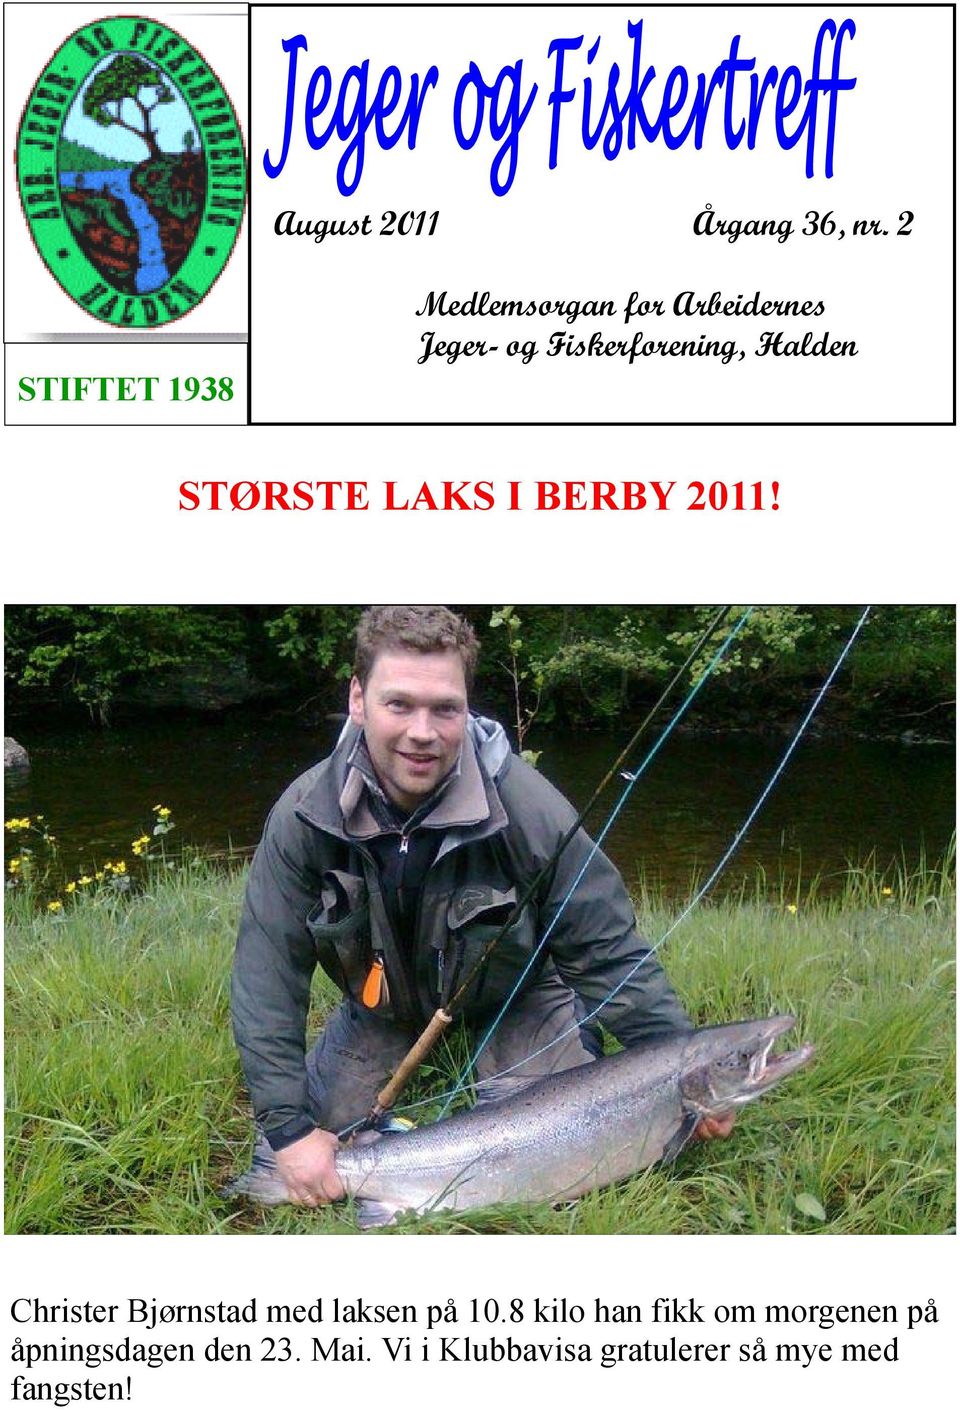 Fiskerforening, Halden STØRSTE LAKS I BERBY 2011!